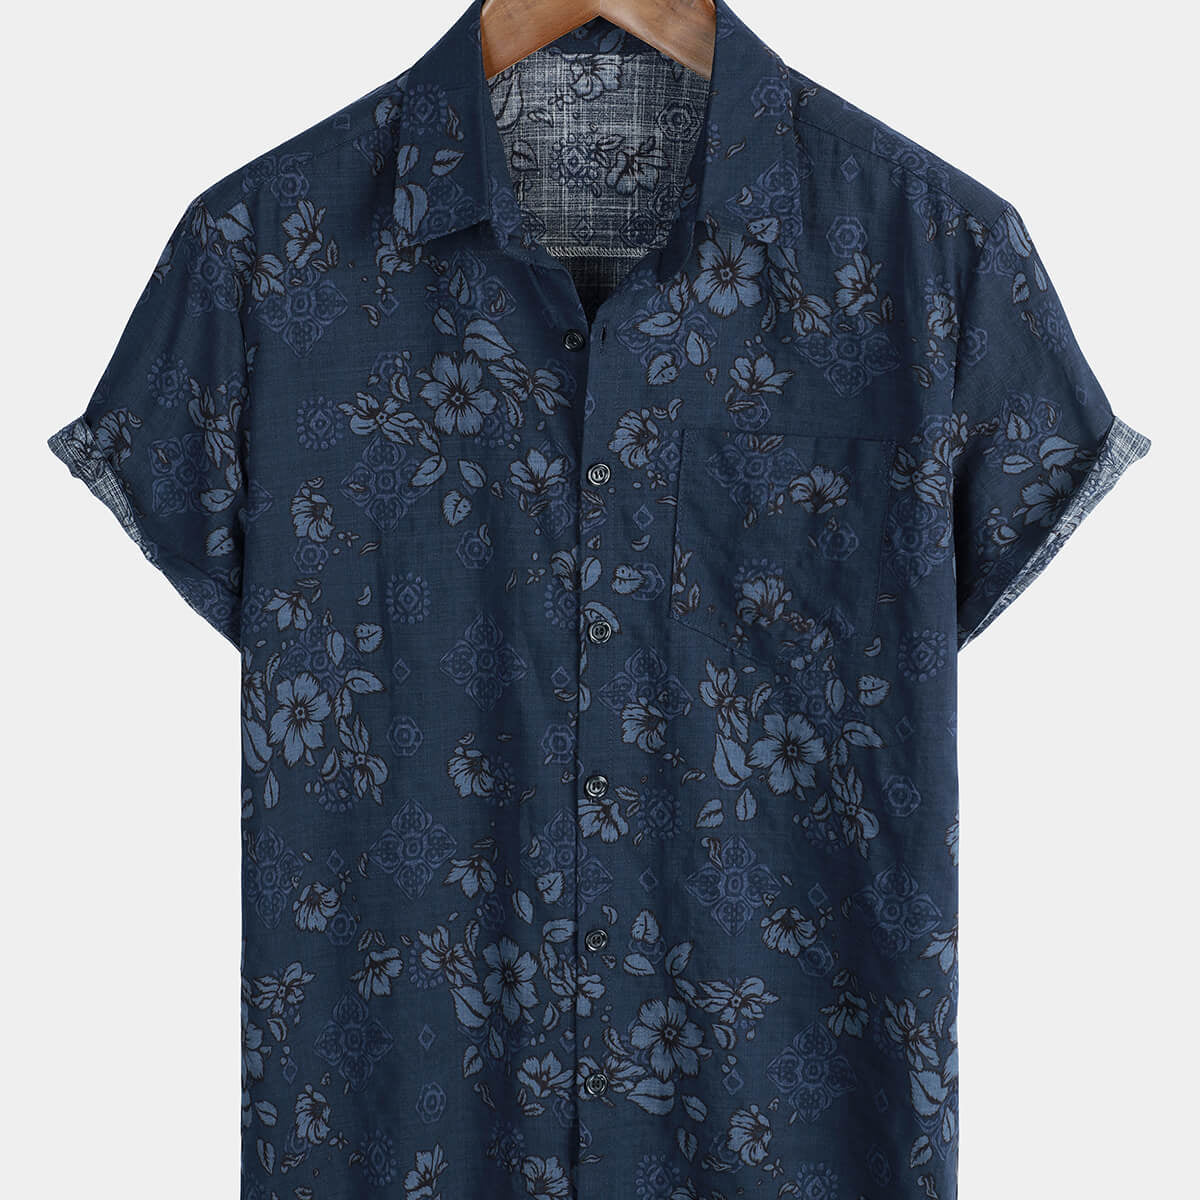 Men's Blue Cotton Floral Hawaiian Vintage Shirt